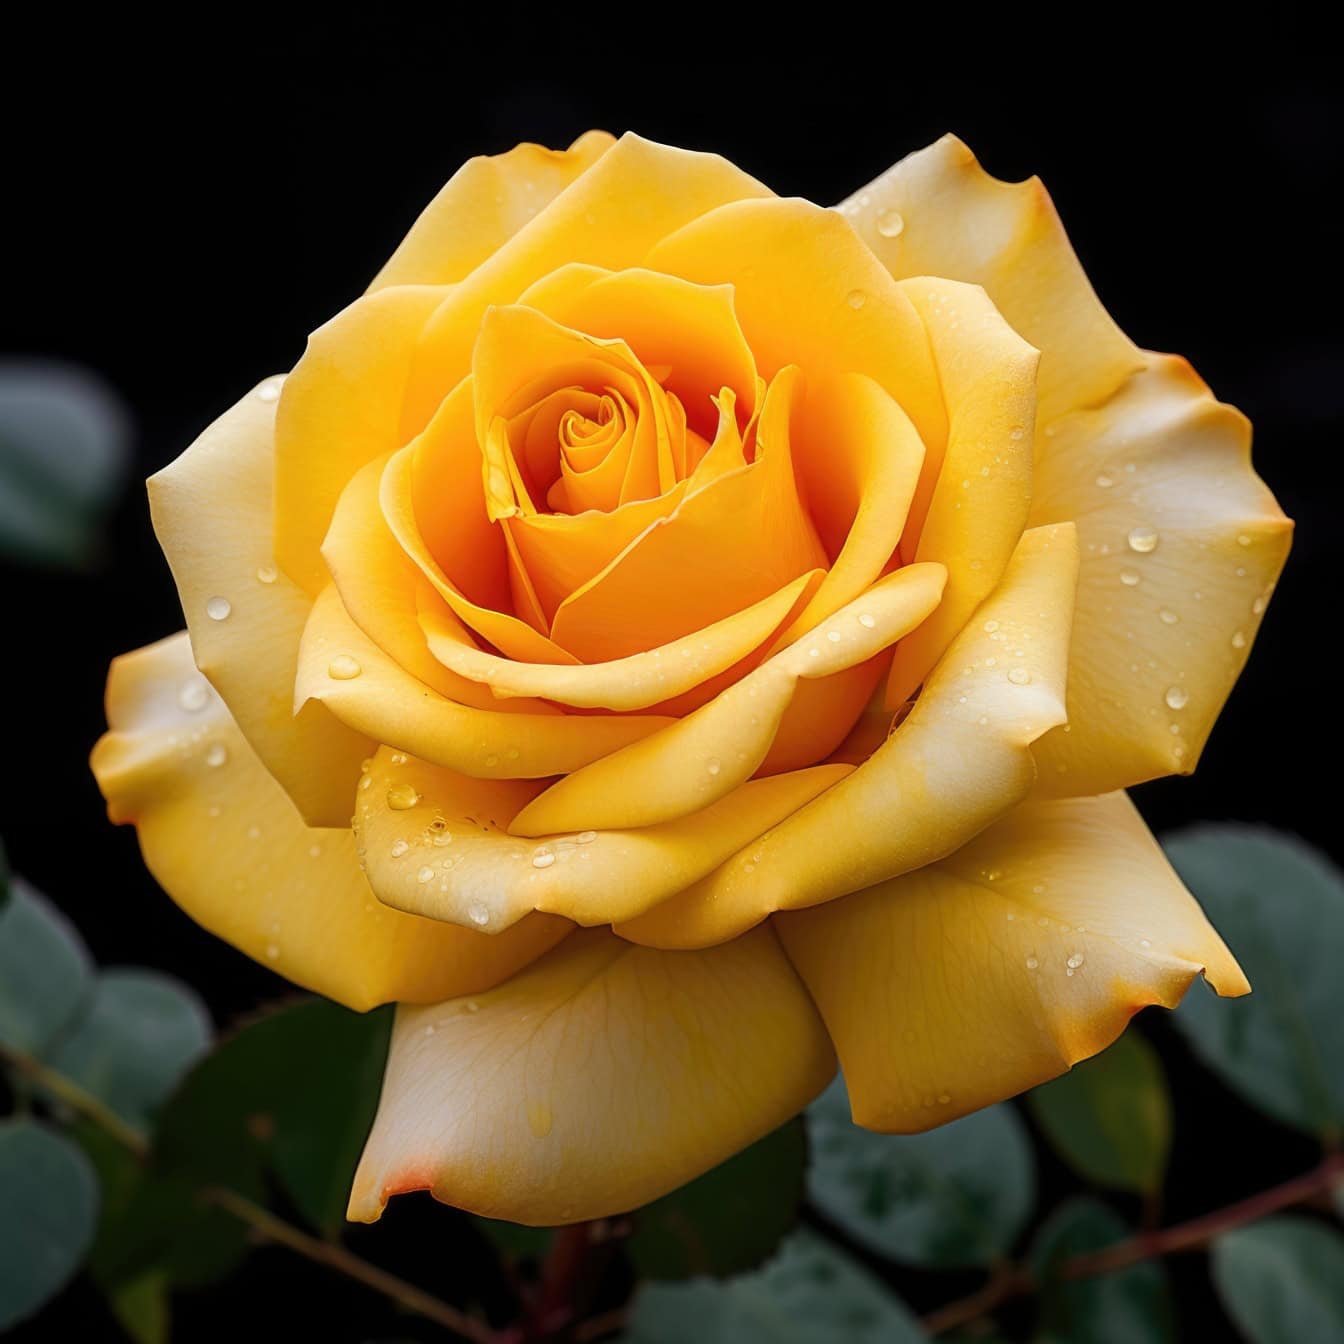 Γραφικό παστέλ κίτρινο τριαντάφυλλο με σταγόνες νερού πάνω του